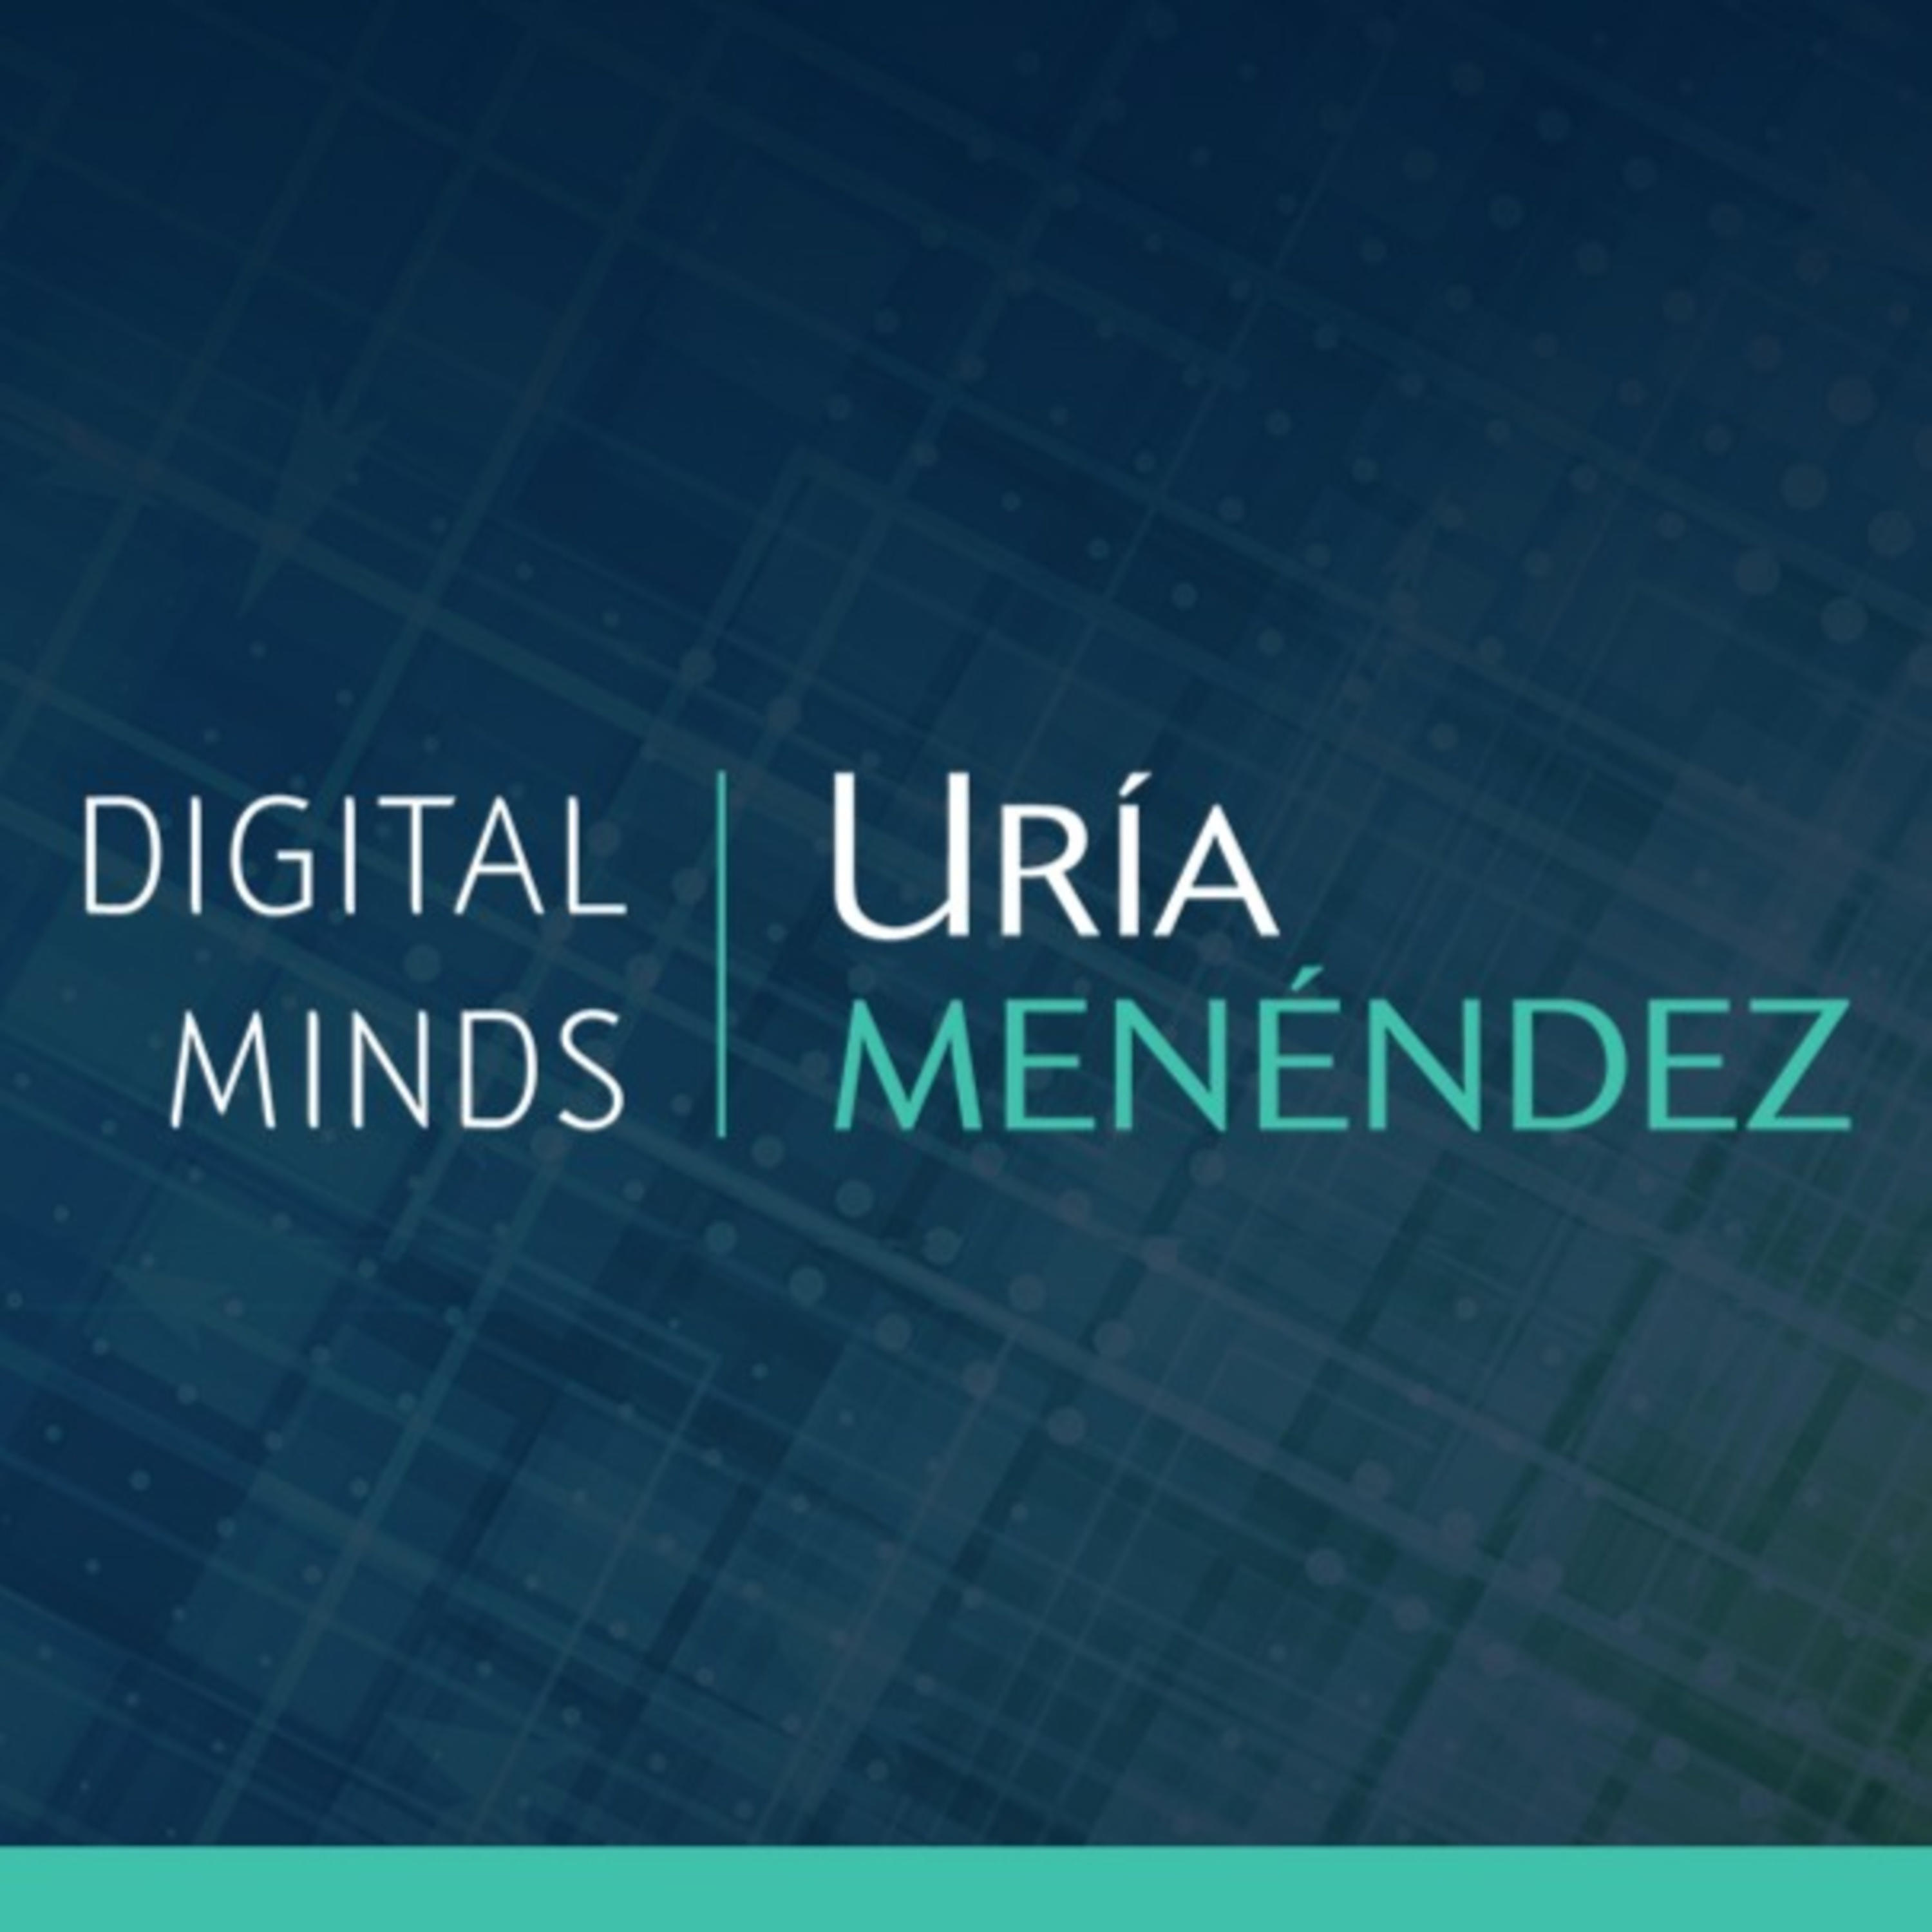 DigitalMinds, el podcast de Uría Menéndez